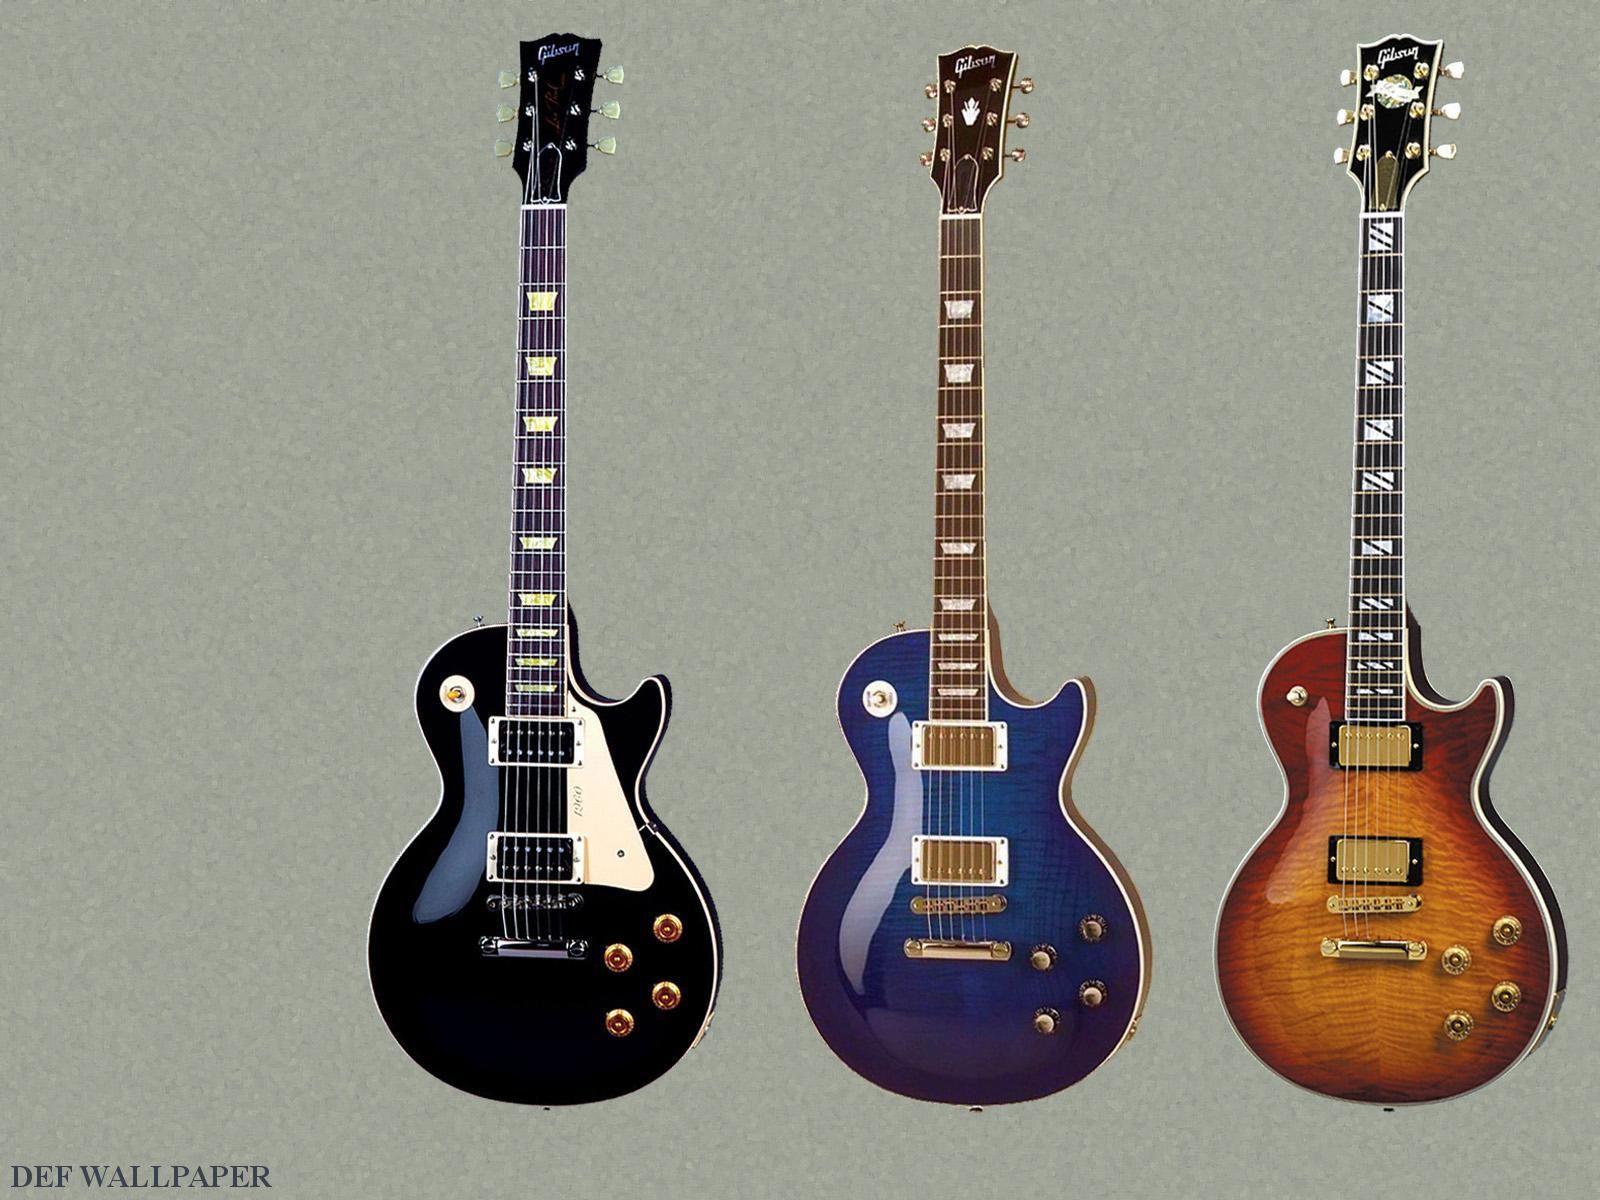 DEF Wallpaper Guitar 3 Gibson Les Paul Guitars Png 245879. Guitars